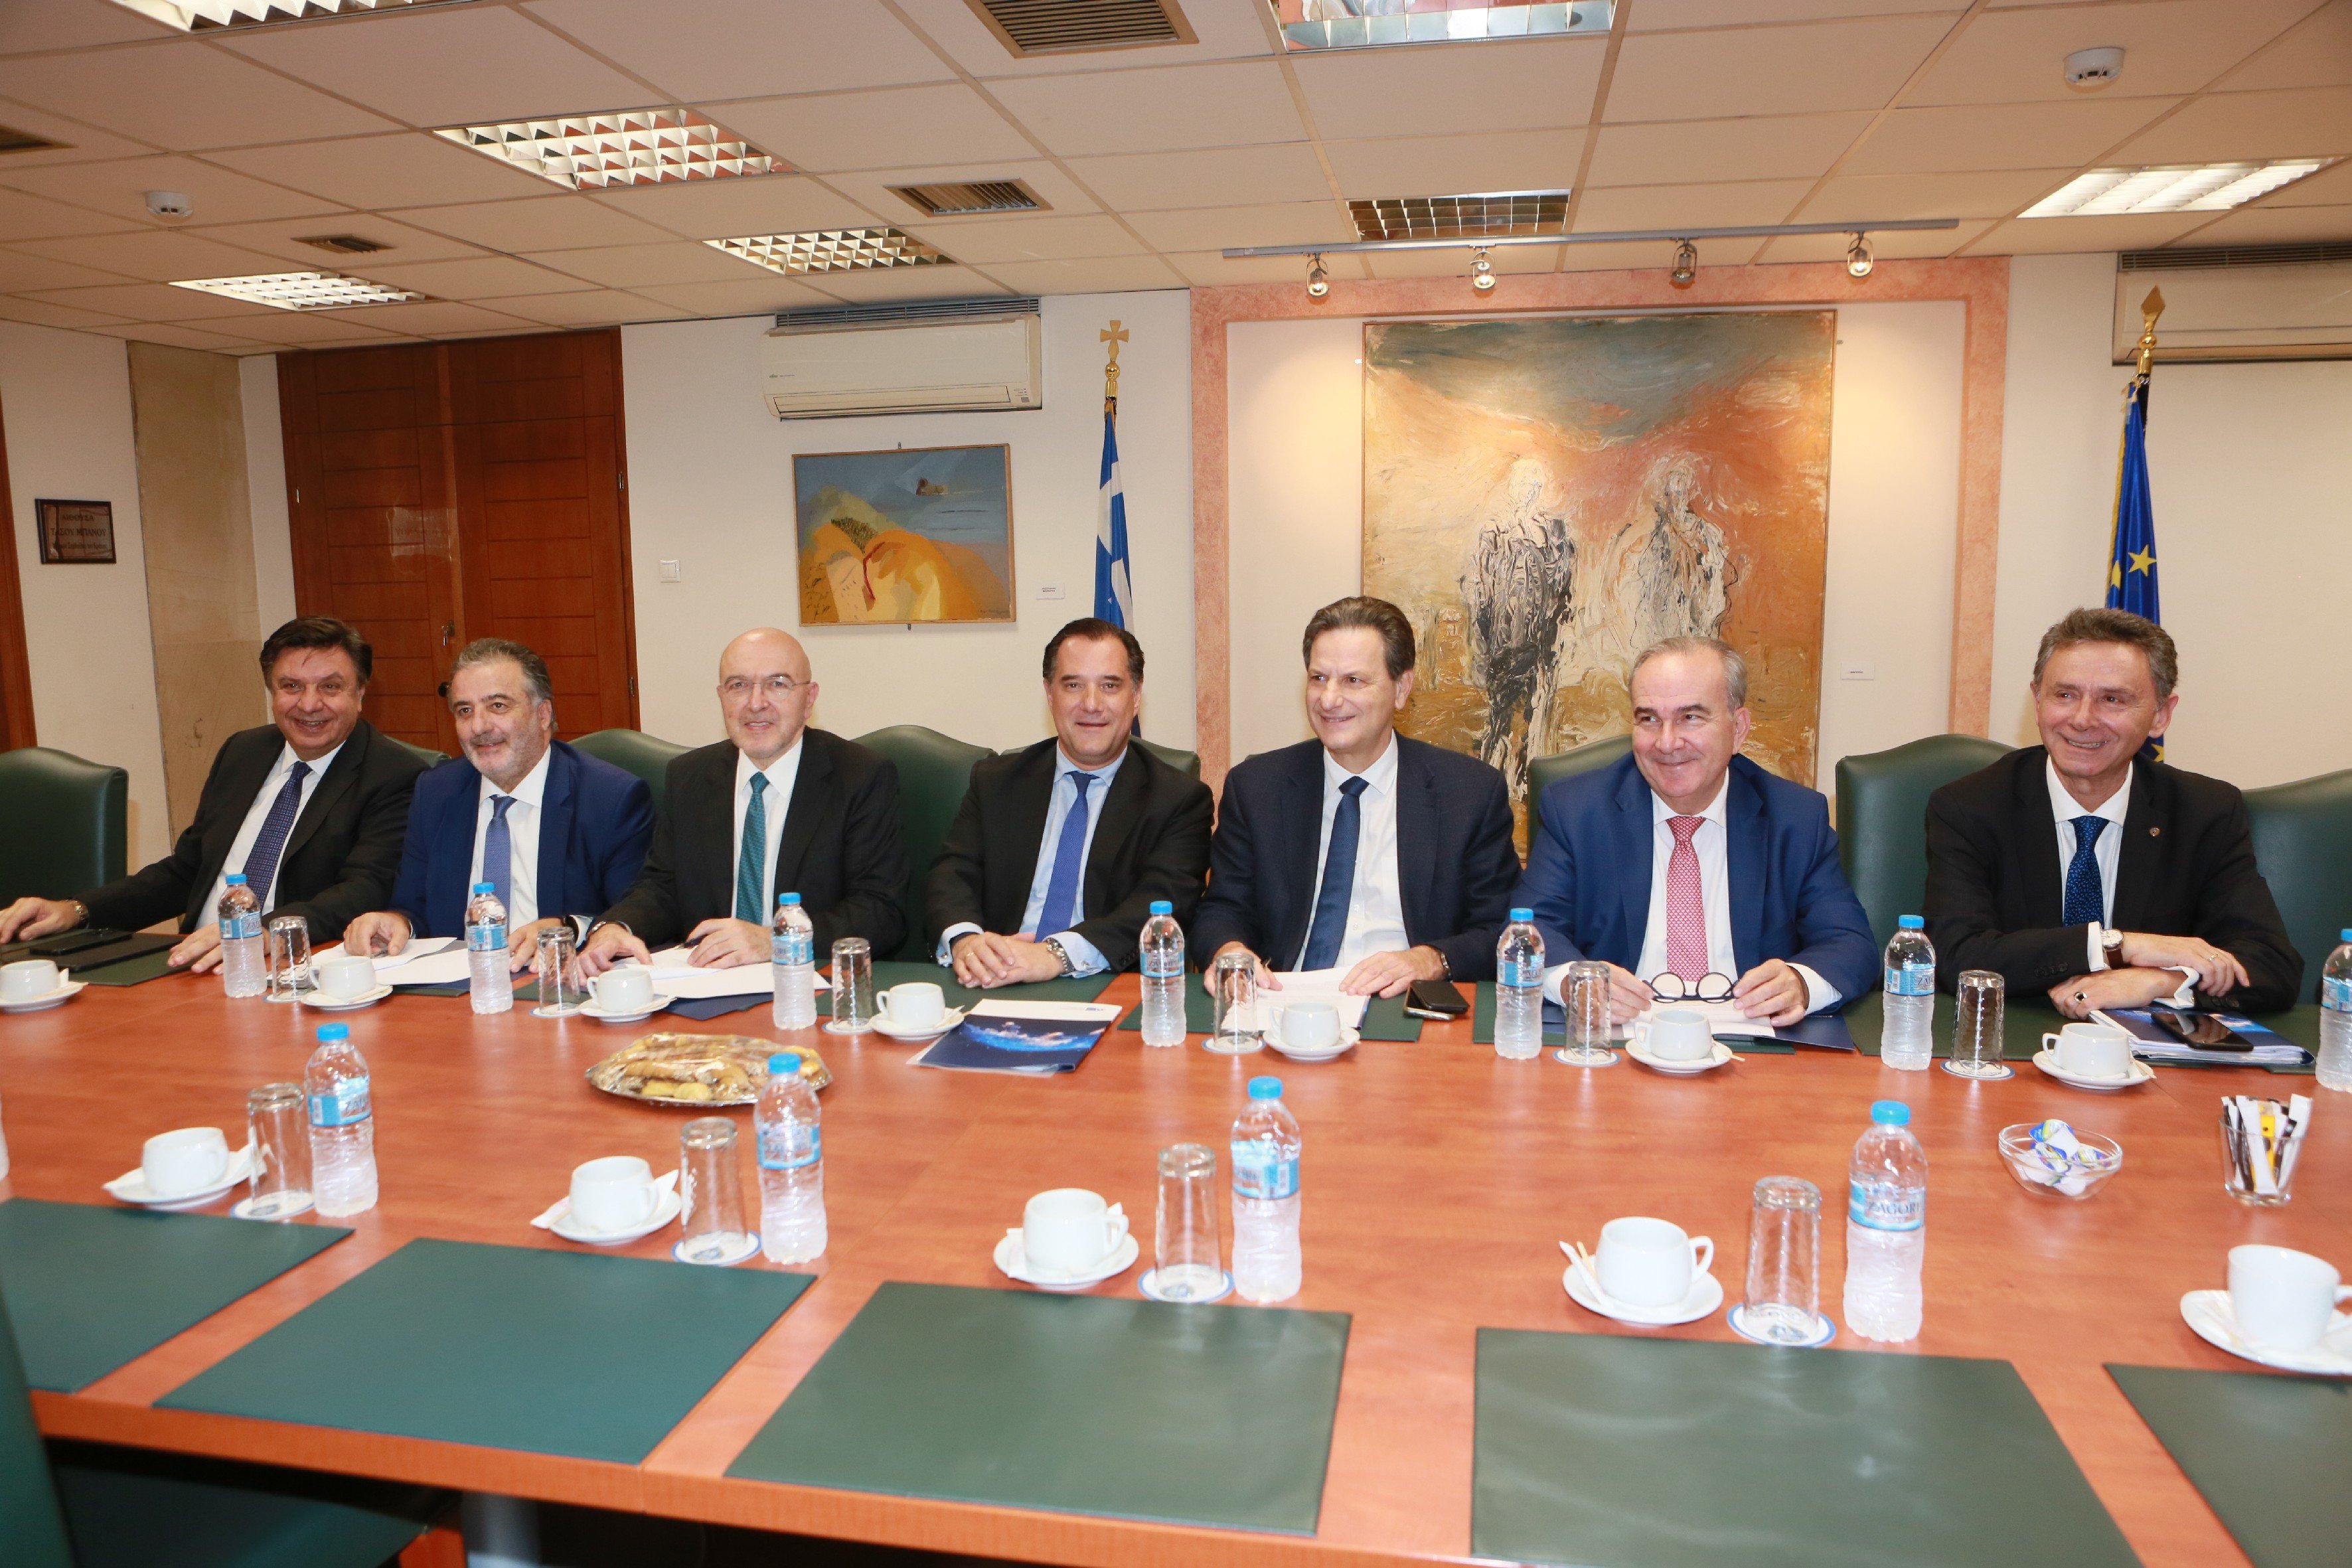 Μνημόνιο συνεργασίας για την ανάπτυξη στενότερης συνεργασίας στο “Ελλάδα 2.0”